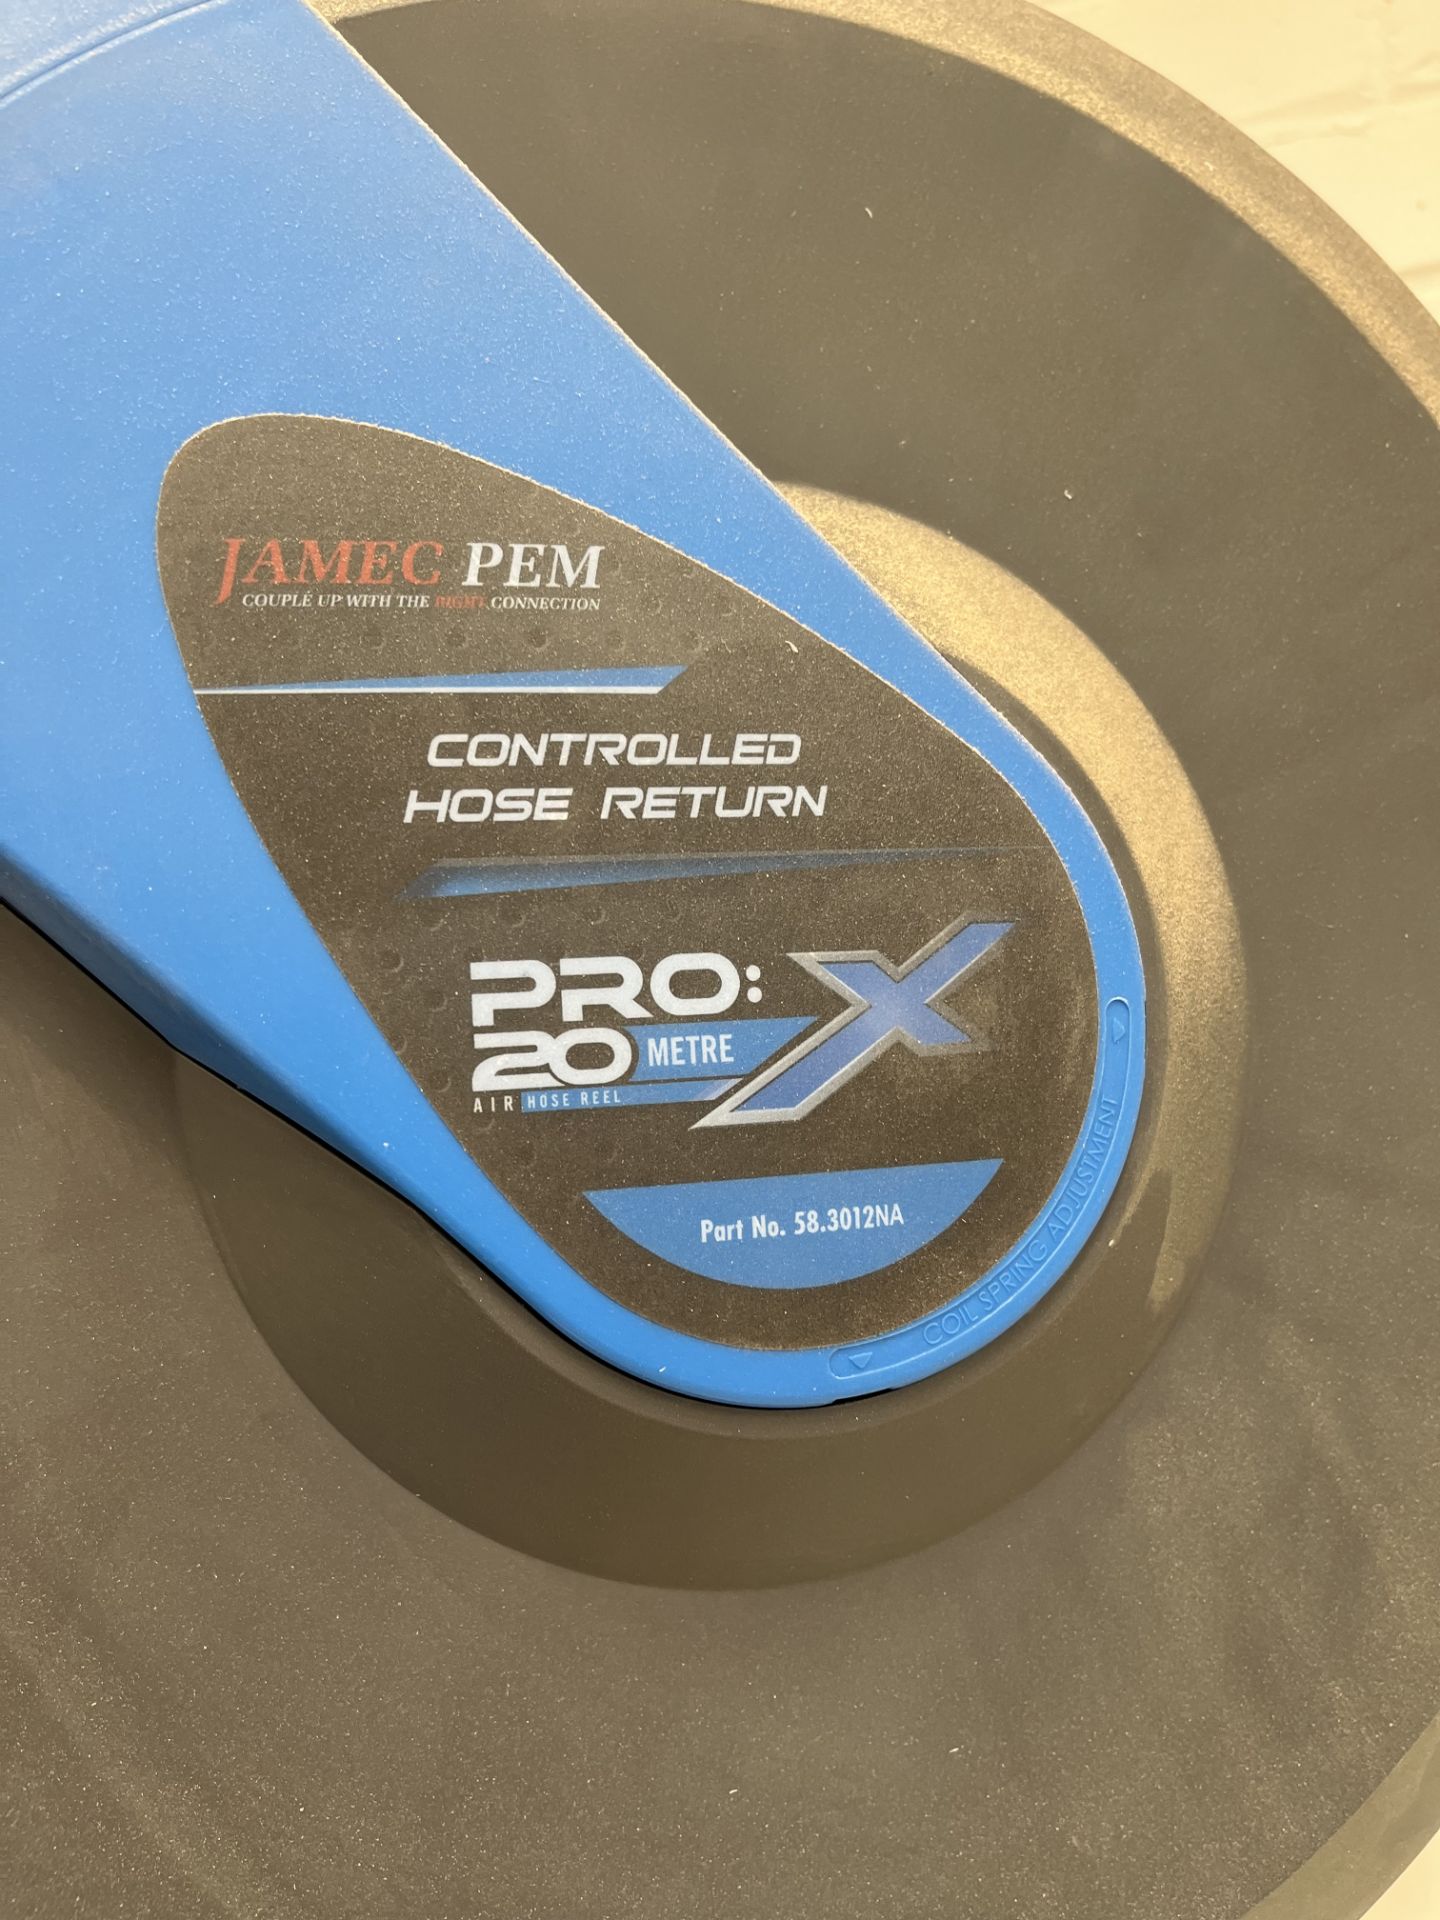 Jamec Pem Pro 20m Air Hose Reel - Image 4 of 5